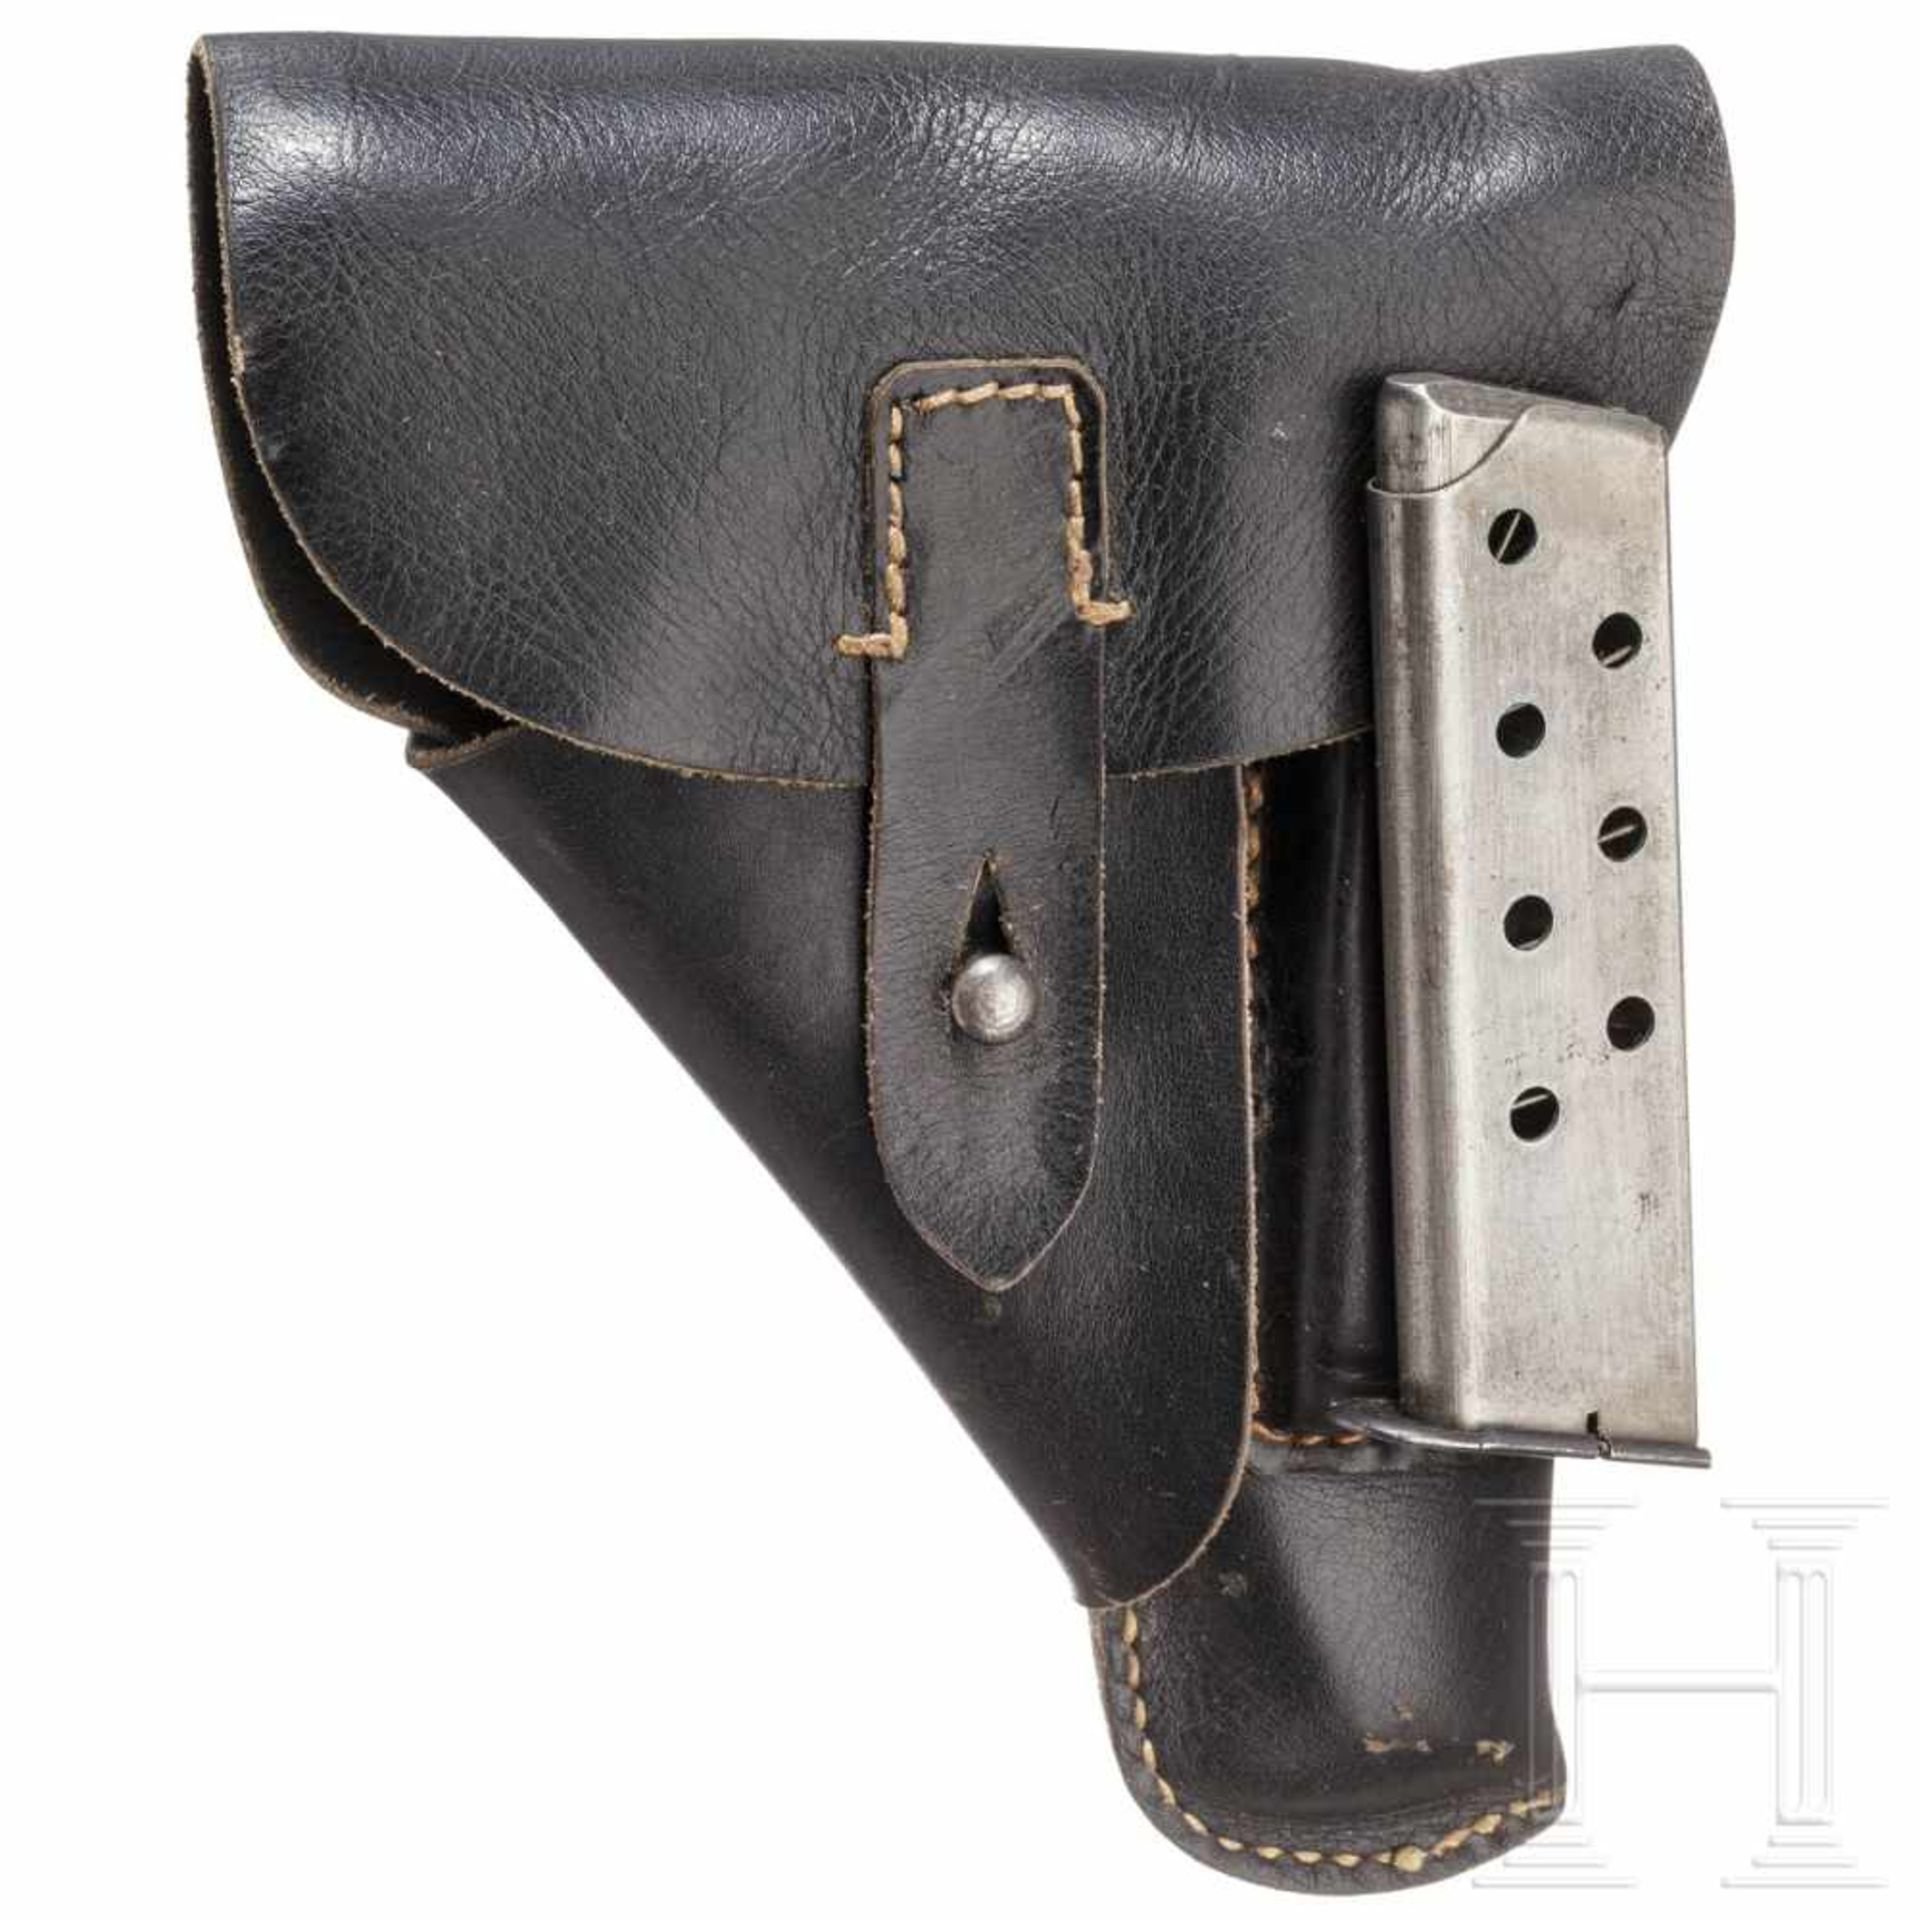 Tasche zur Mauser HSc mit MagazinFertigung aus weichem, schwarzem Rindsleder. Ohne Code oder